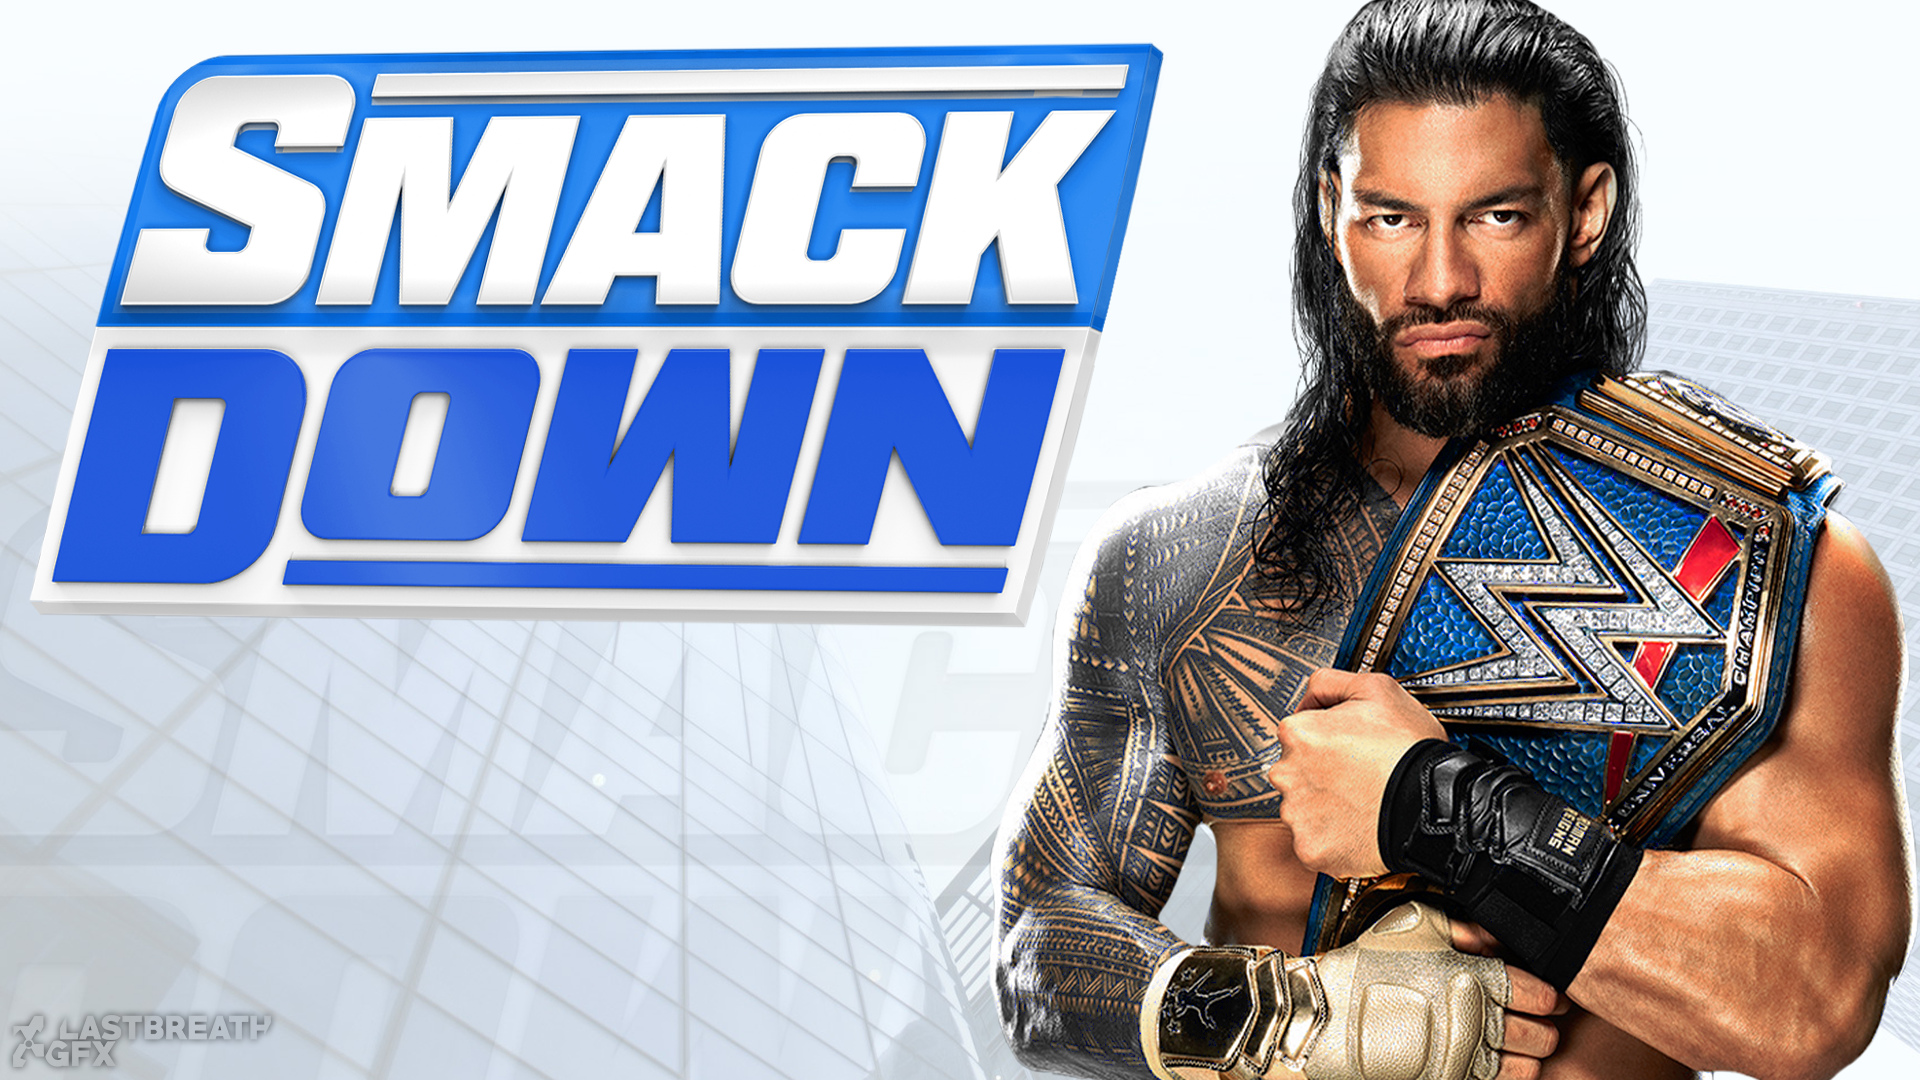 WWE SmackDown Roman Reigns Wallpaper 2021 by LastBreathGFX on DeviantArt